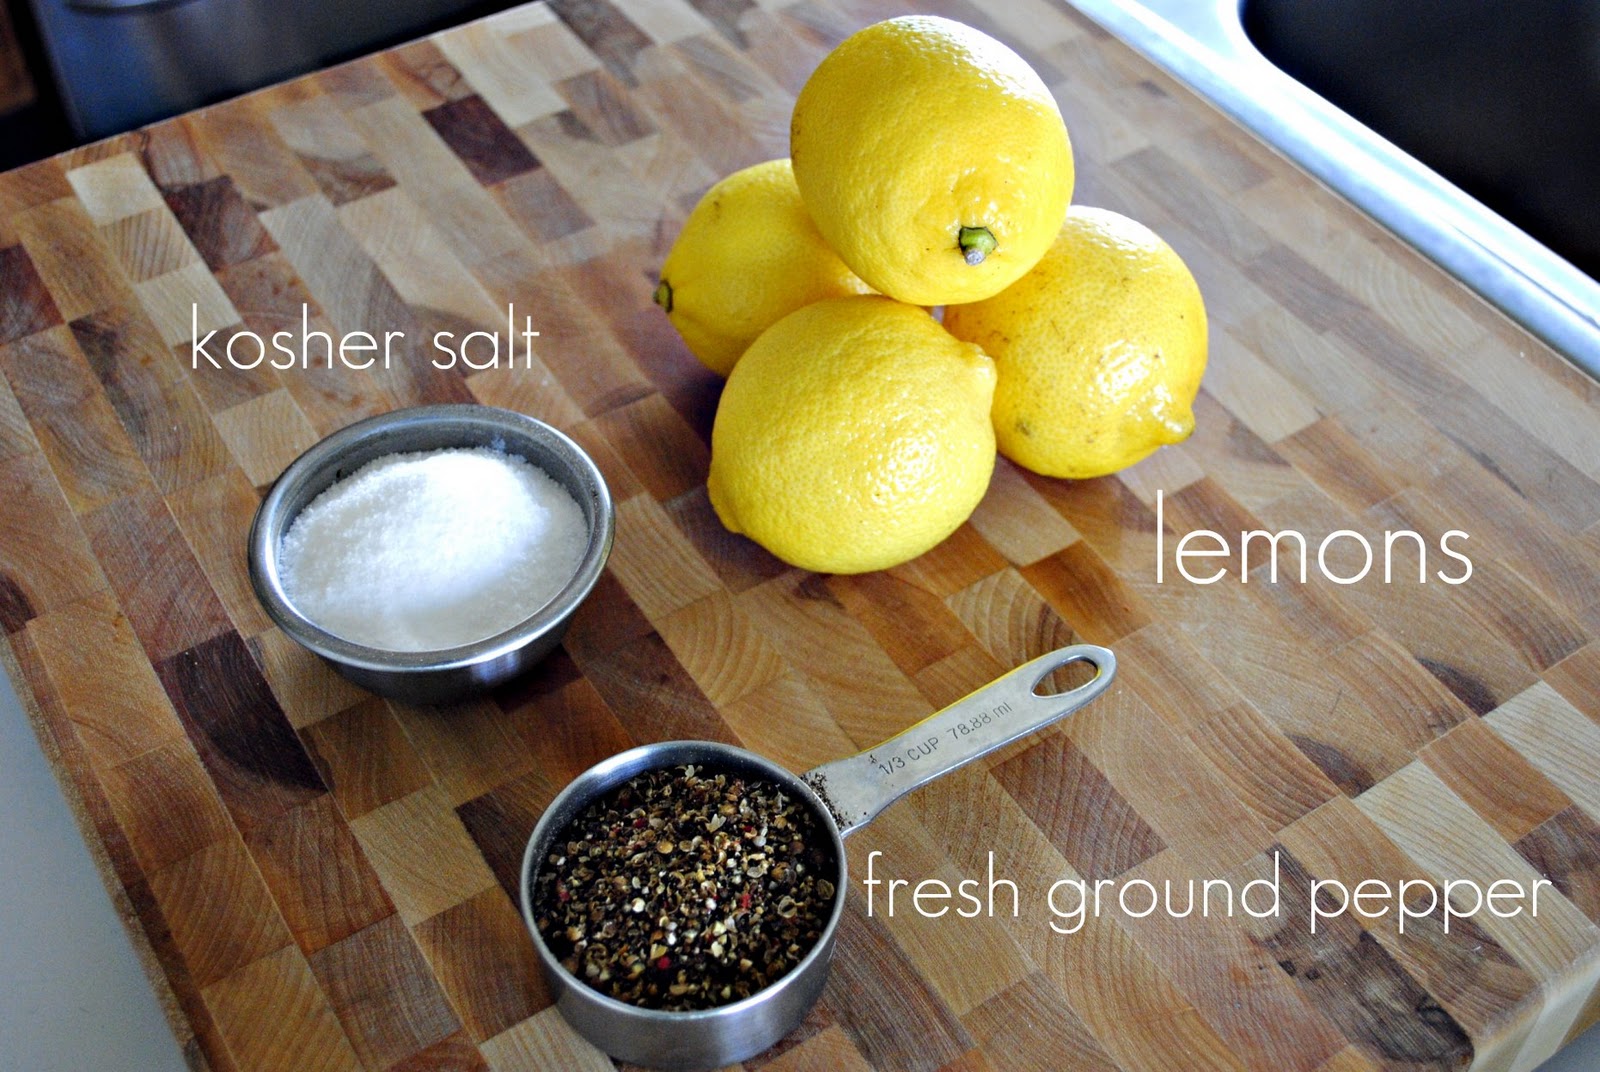 Best Lemon Pepper Seasoning  Lemon Pepper Powder – True Citrus